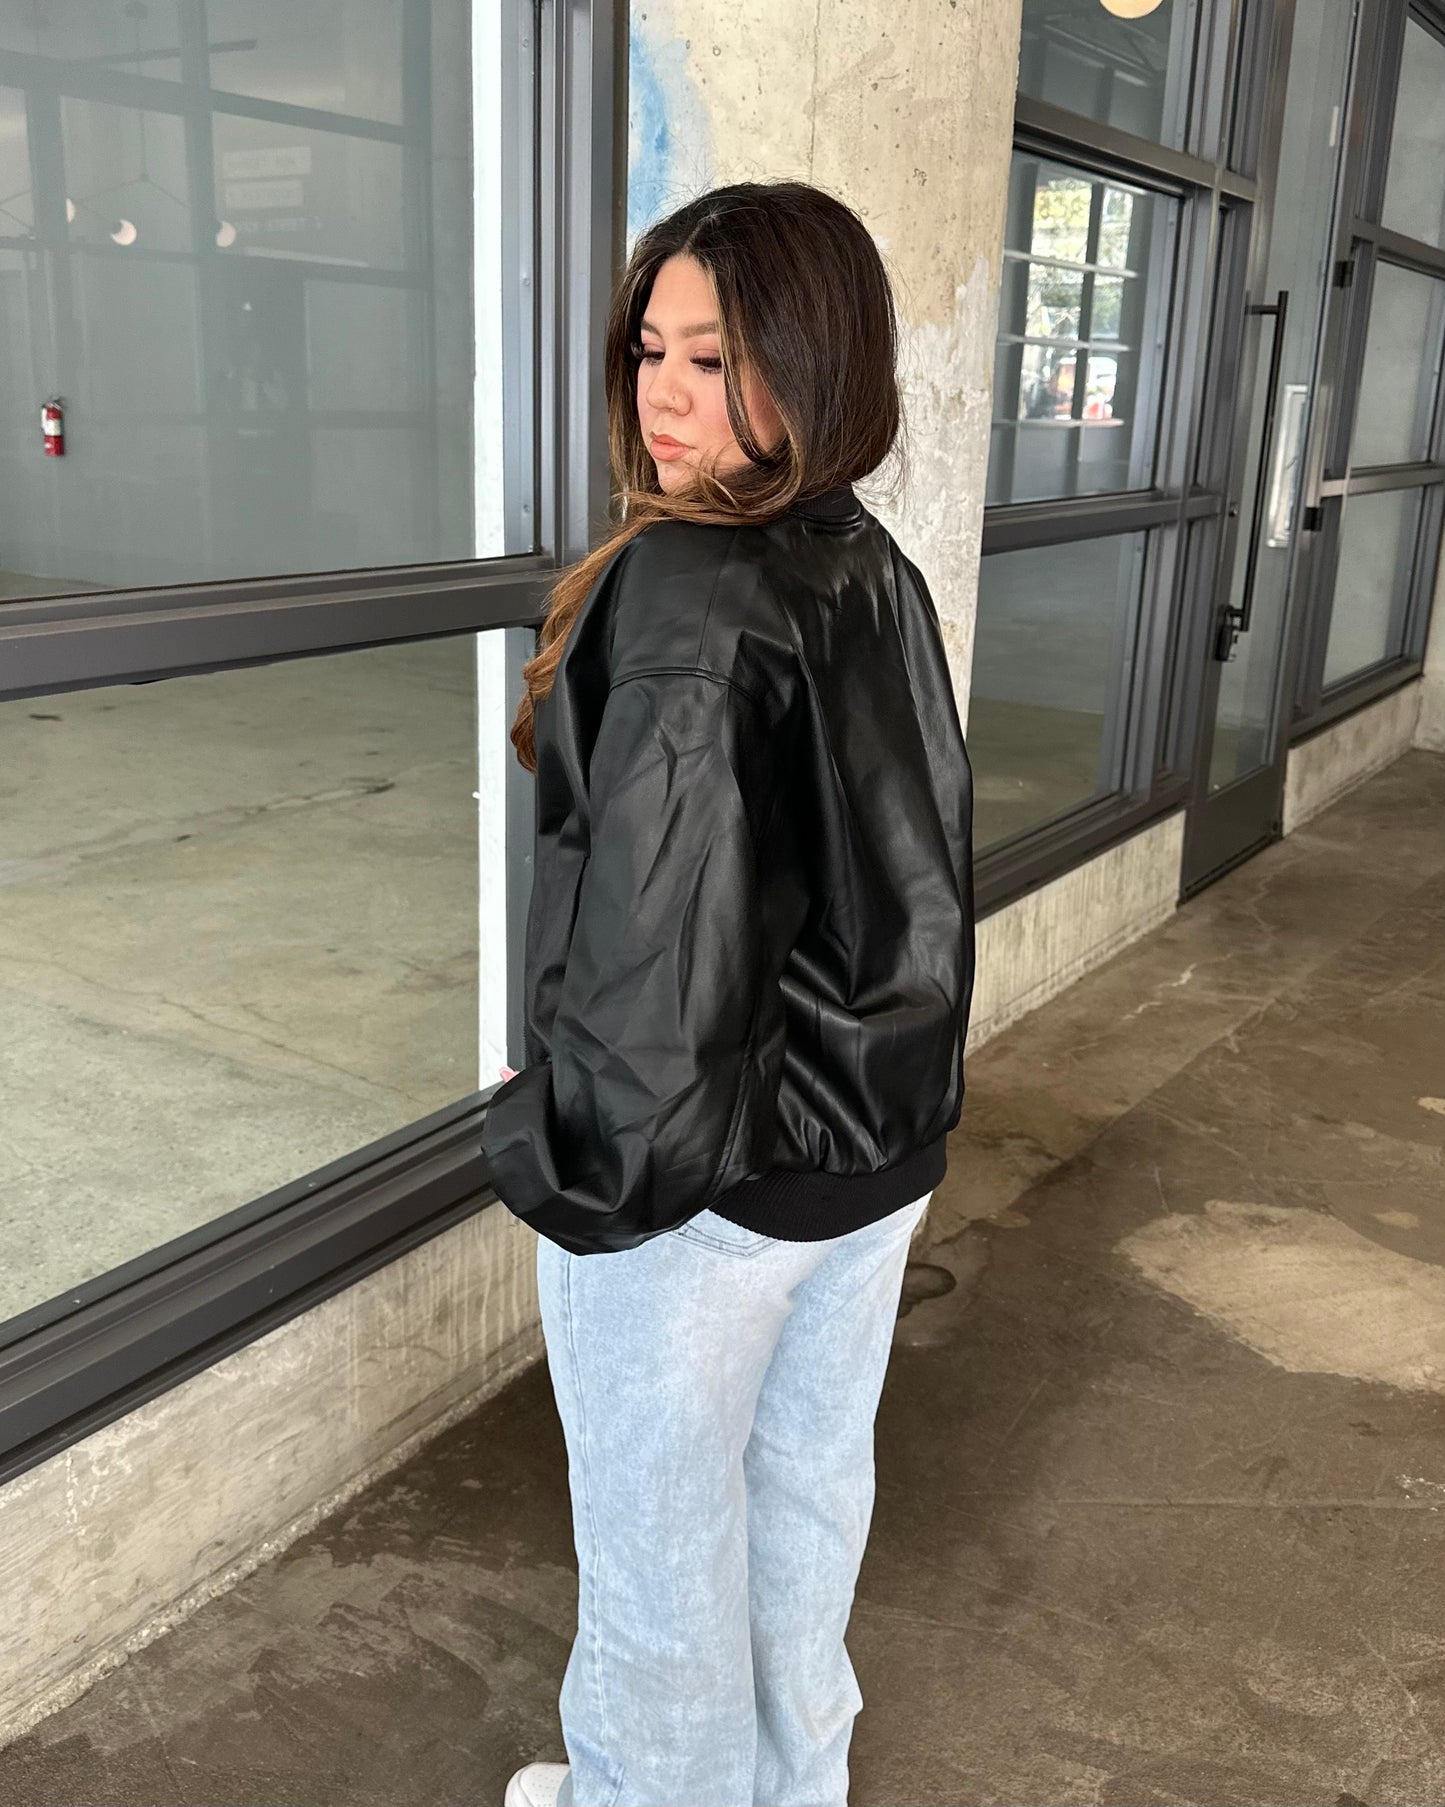 Denise Oversized Leather Jacket